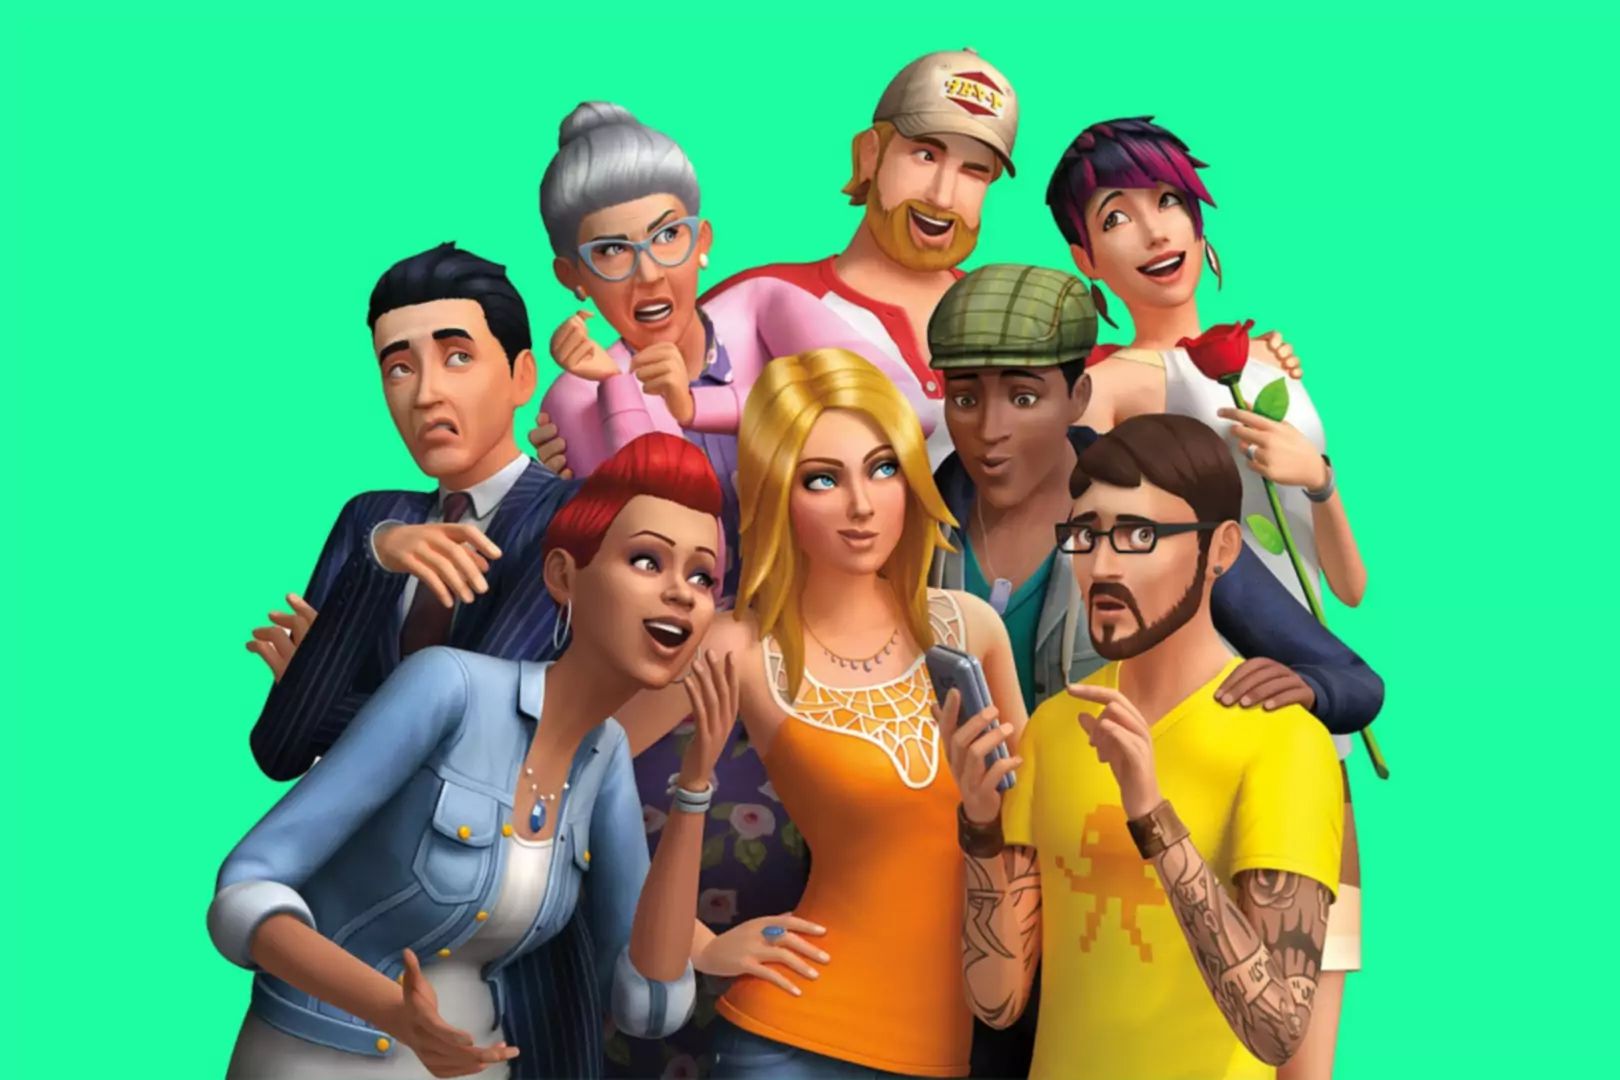 CGI Sims personāži pozē kopā un veido muļķīgas izteiksmes